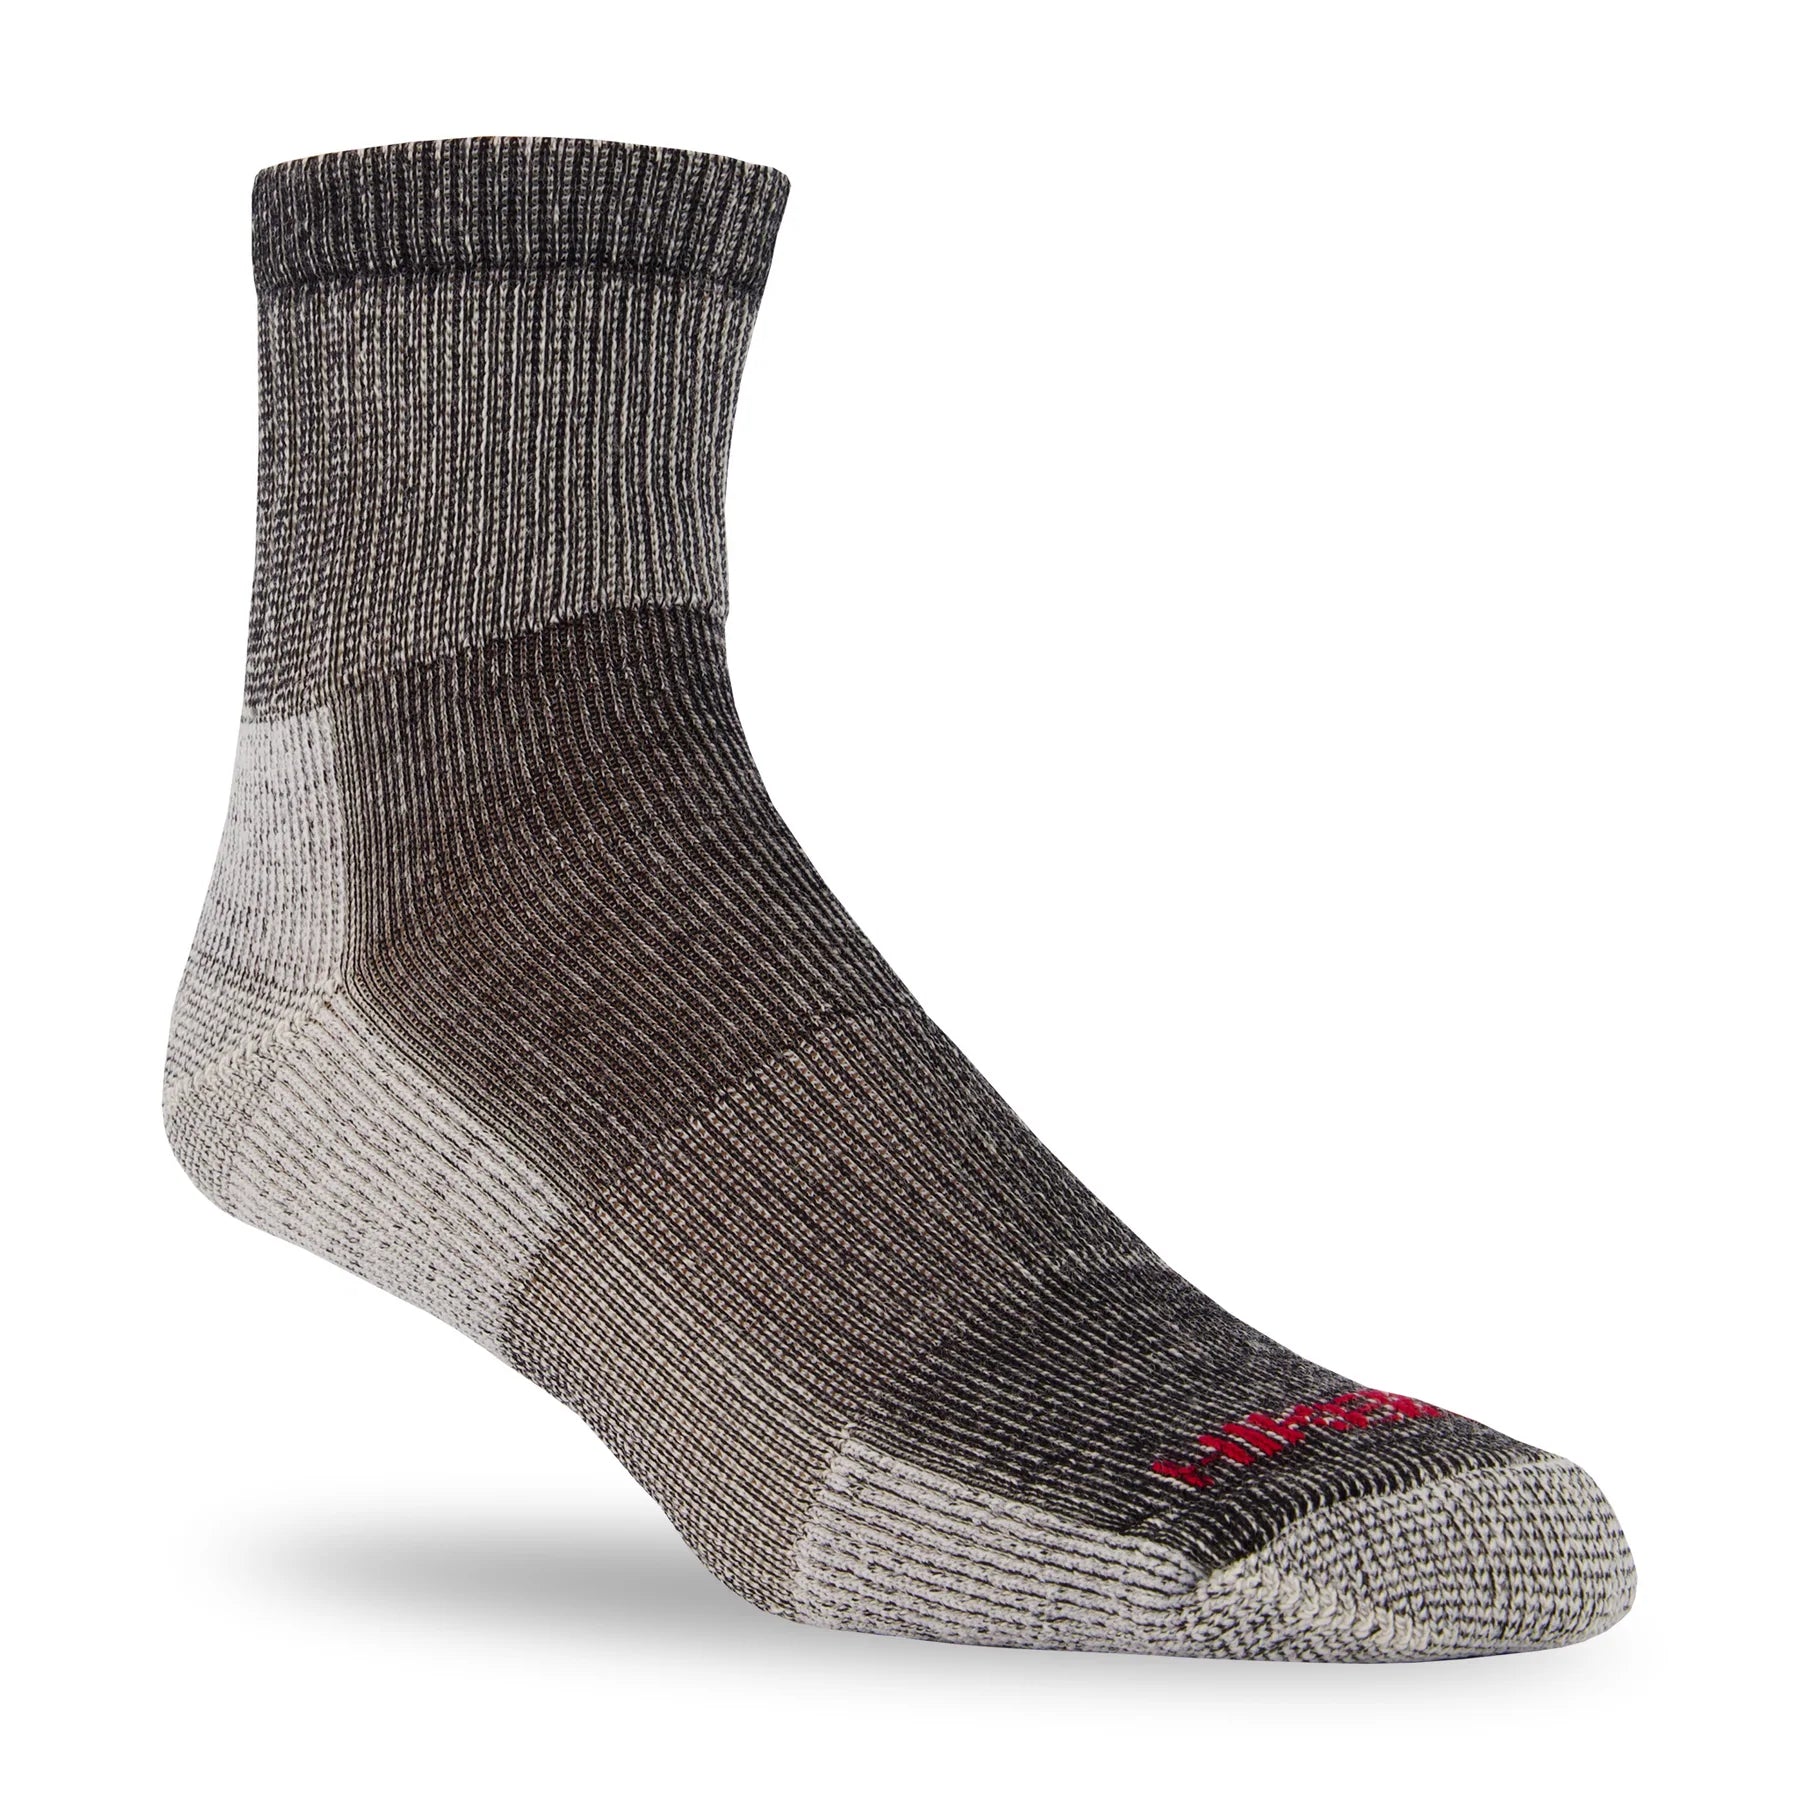 J.B. Field’s Low Cut Hiker GX Merino Wool Socks – Black | J.B.Fields